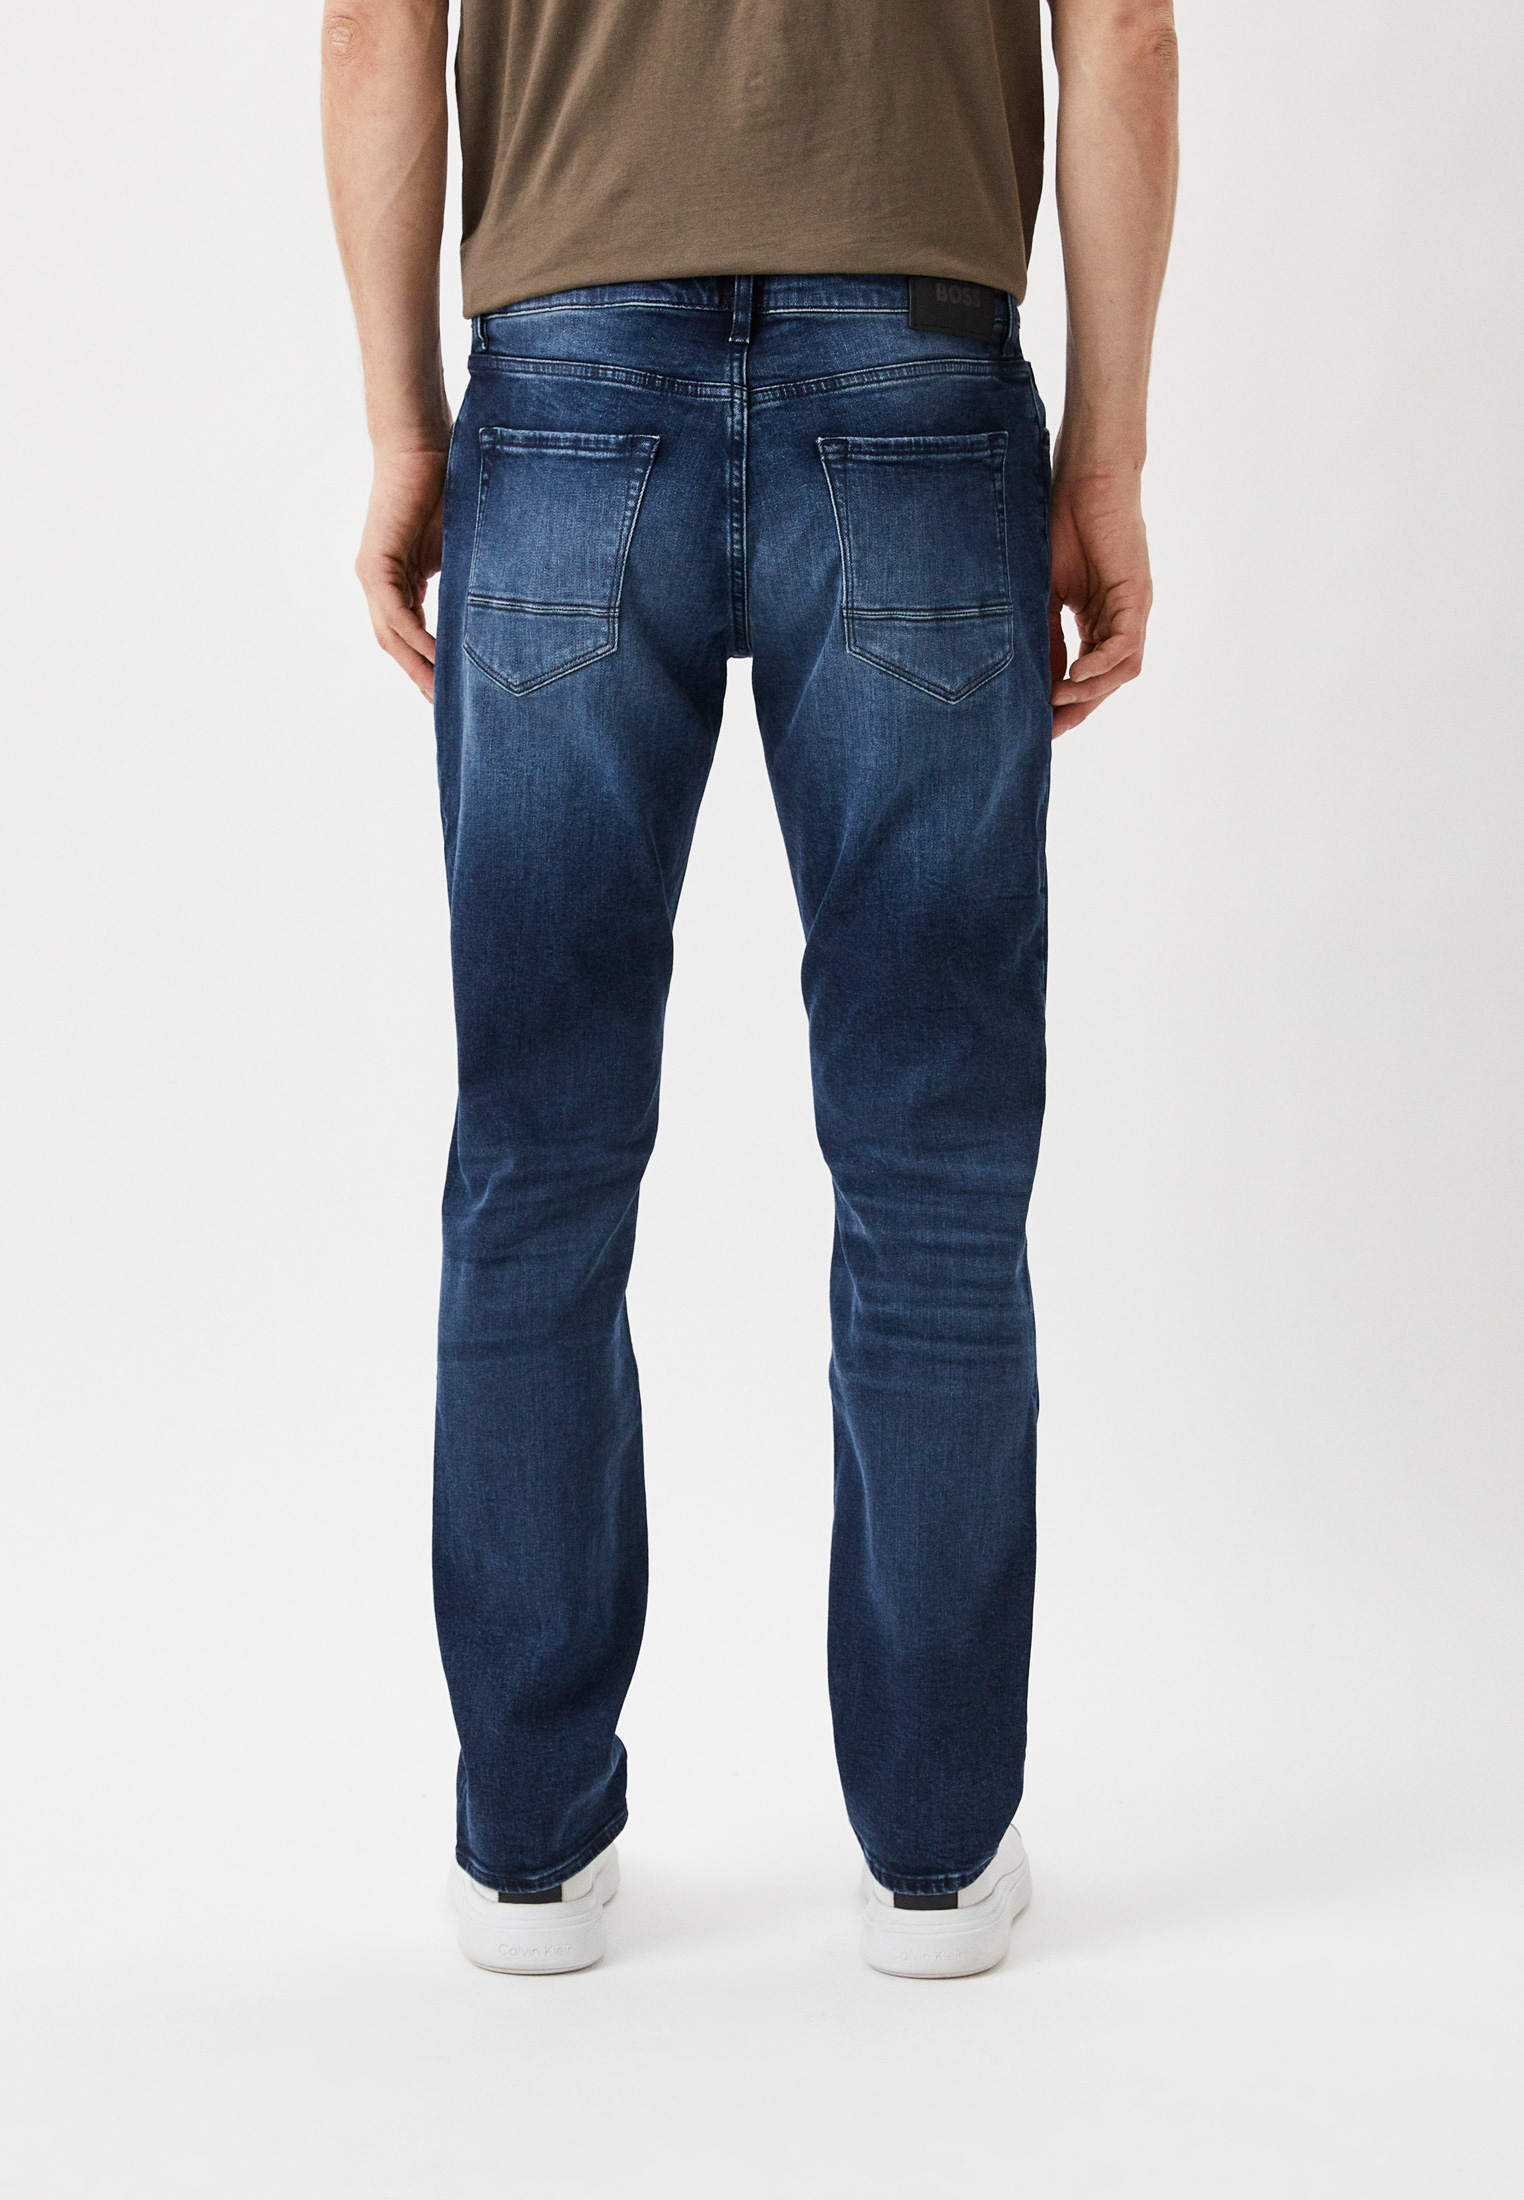 Мужские зауженные джинсы Boss (Босс) 50463090: изображение 3